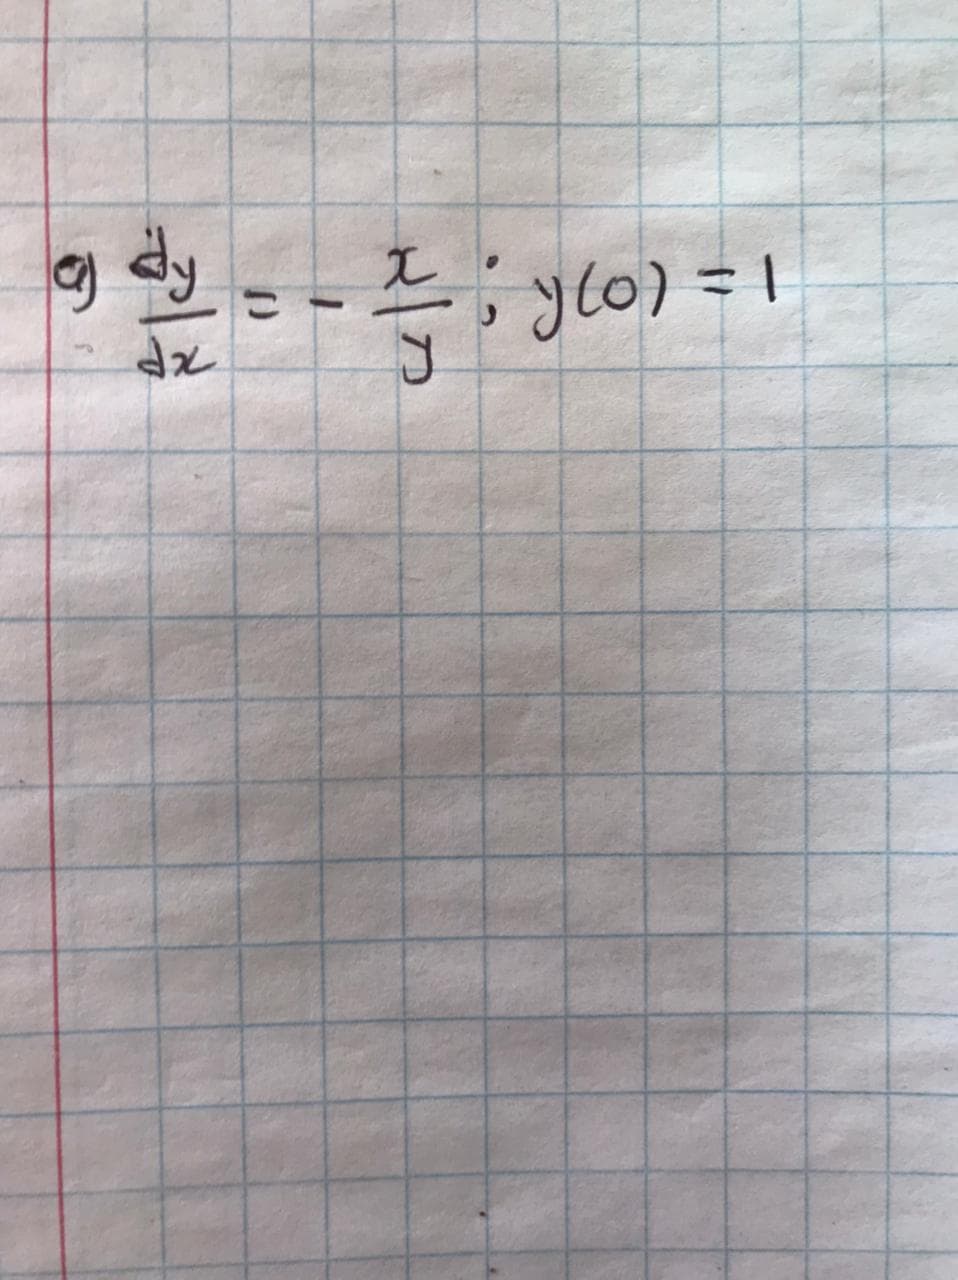 e dy
자
= - 2; g(o) = 1